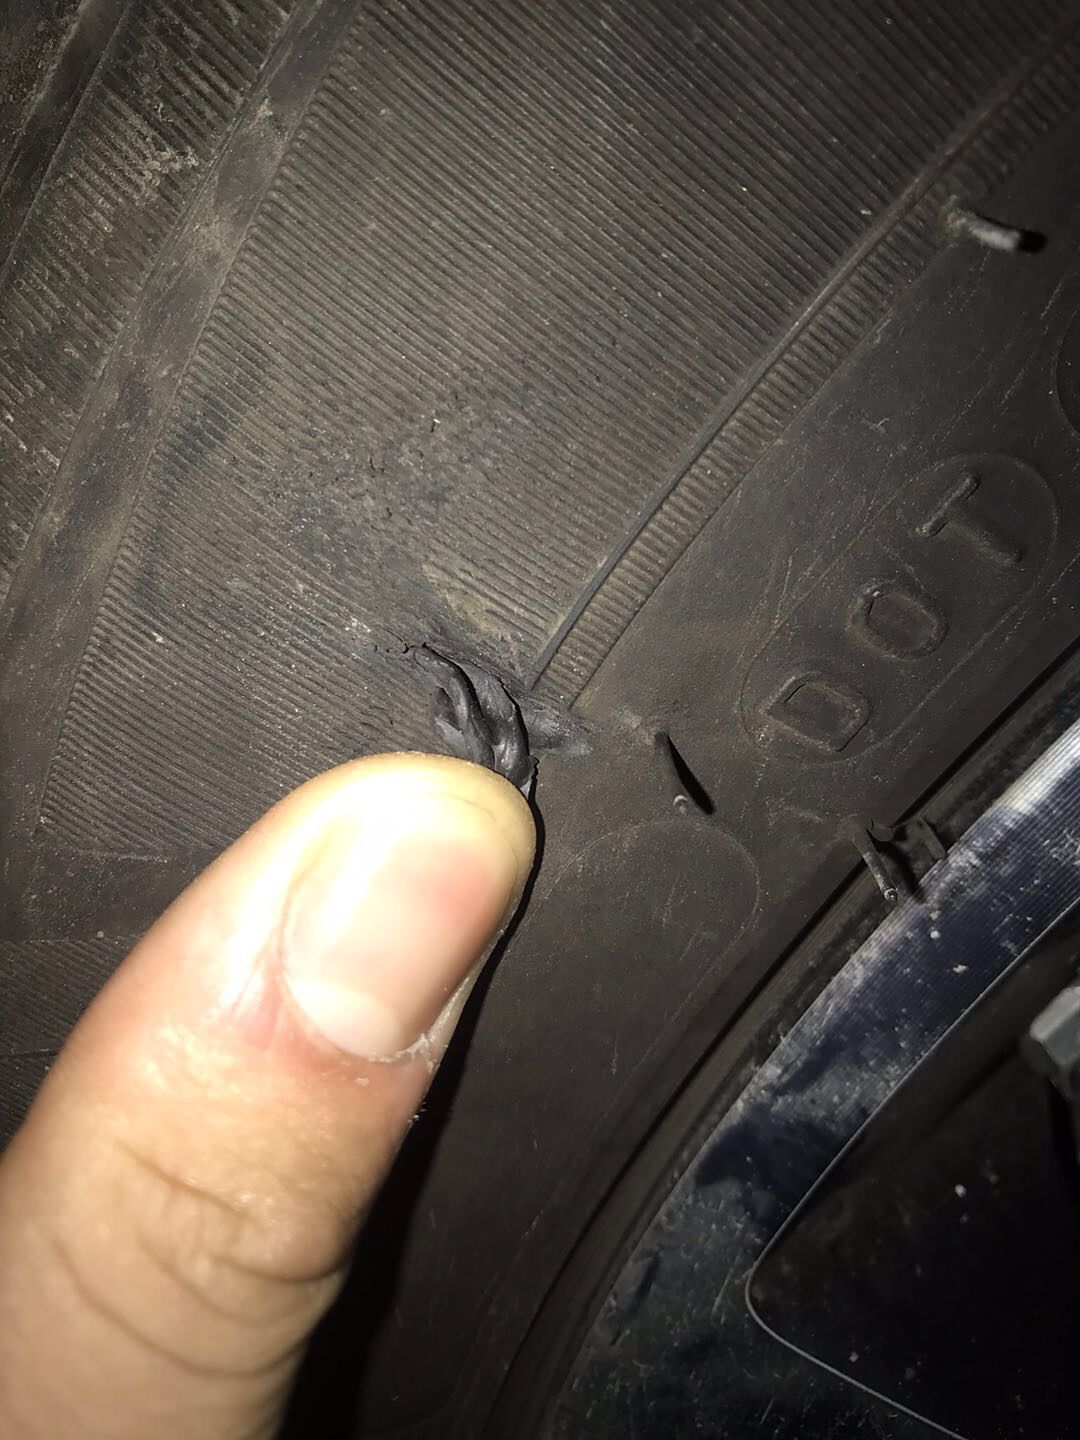 轮胎侧壁蹭缺了一小块,没看到帘布层,换吗?